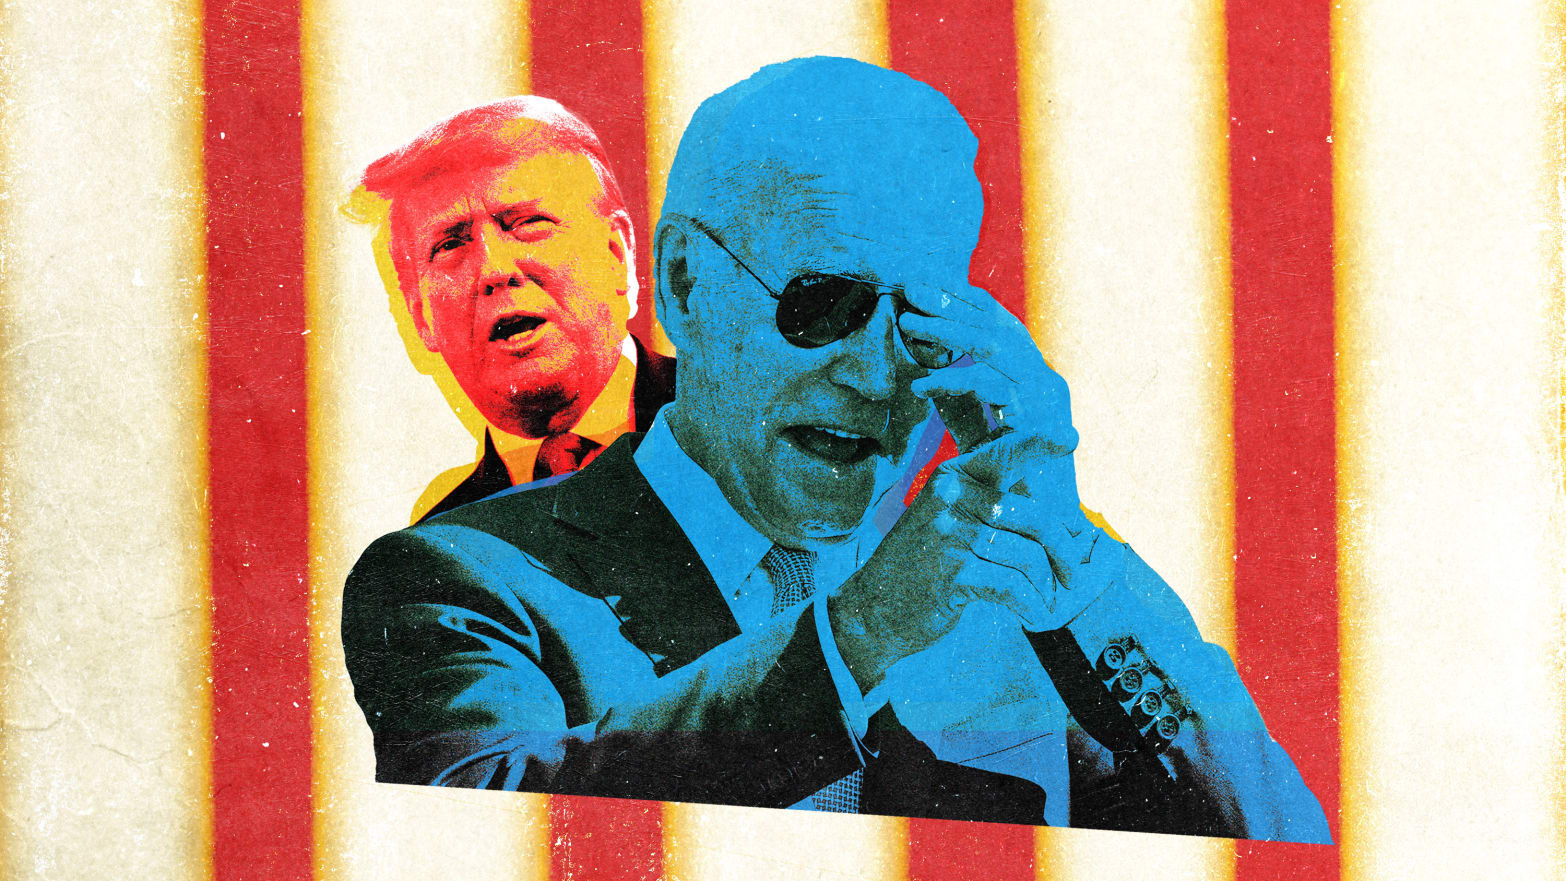 An illustration including photos of Donald Trump and Joe Biden